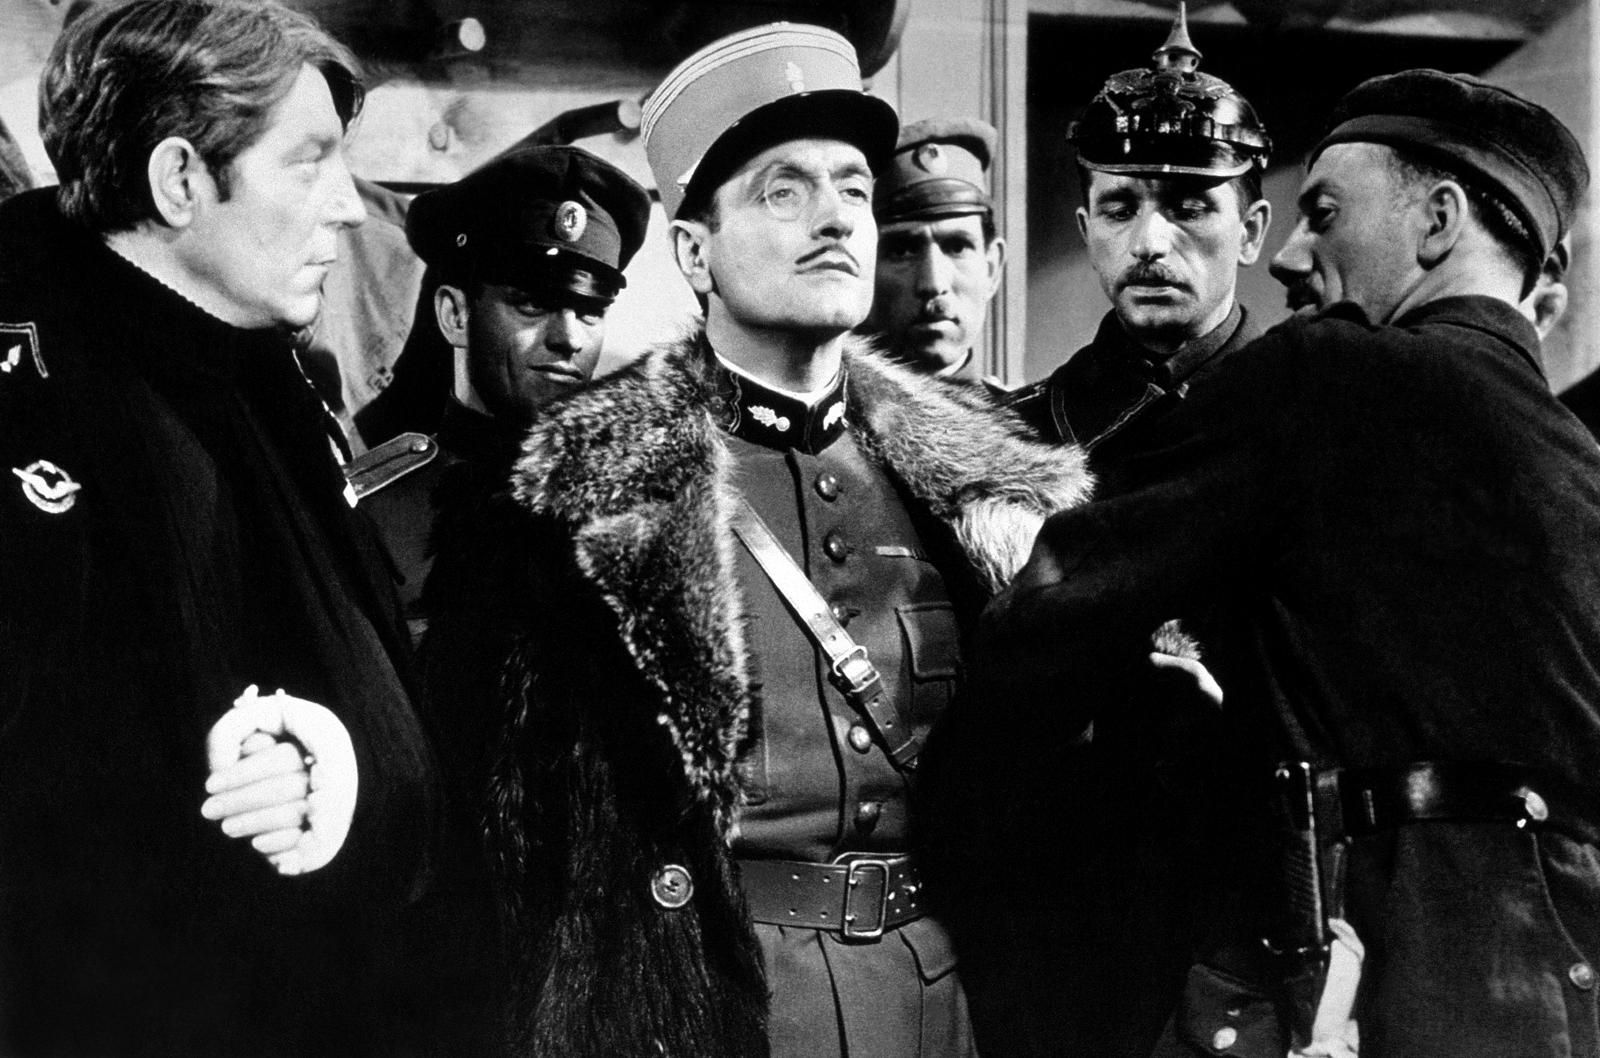 دانلود فیلم La Grande Illusion 1937